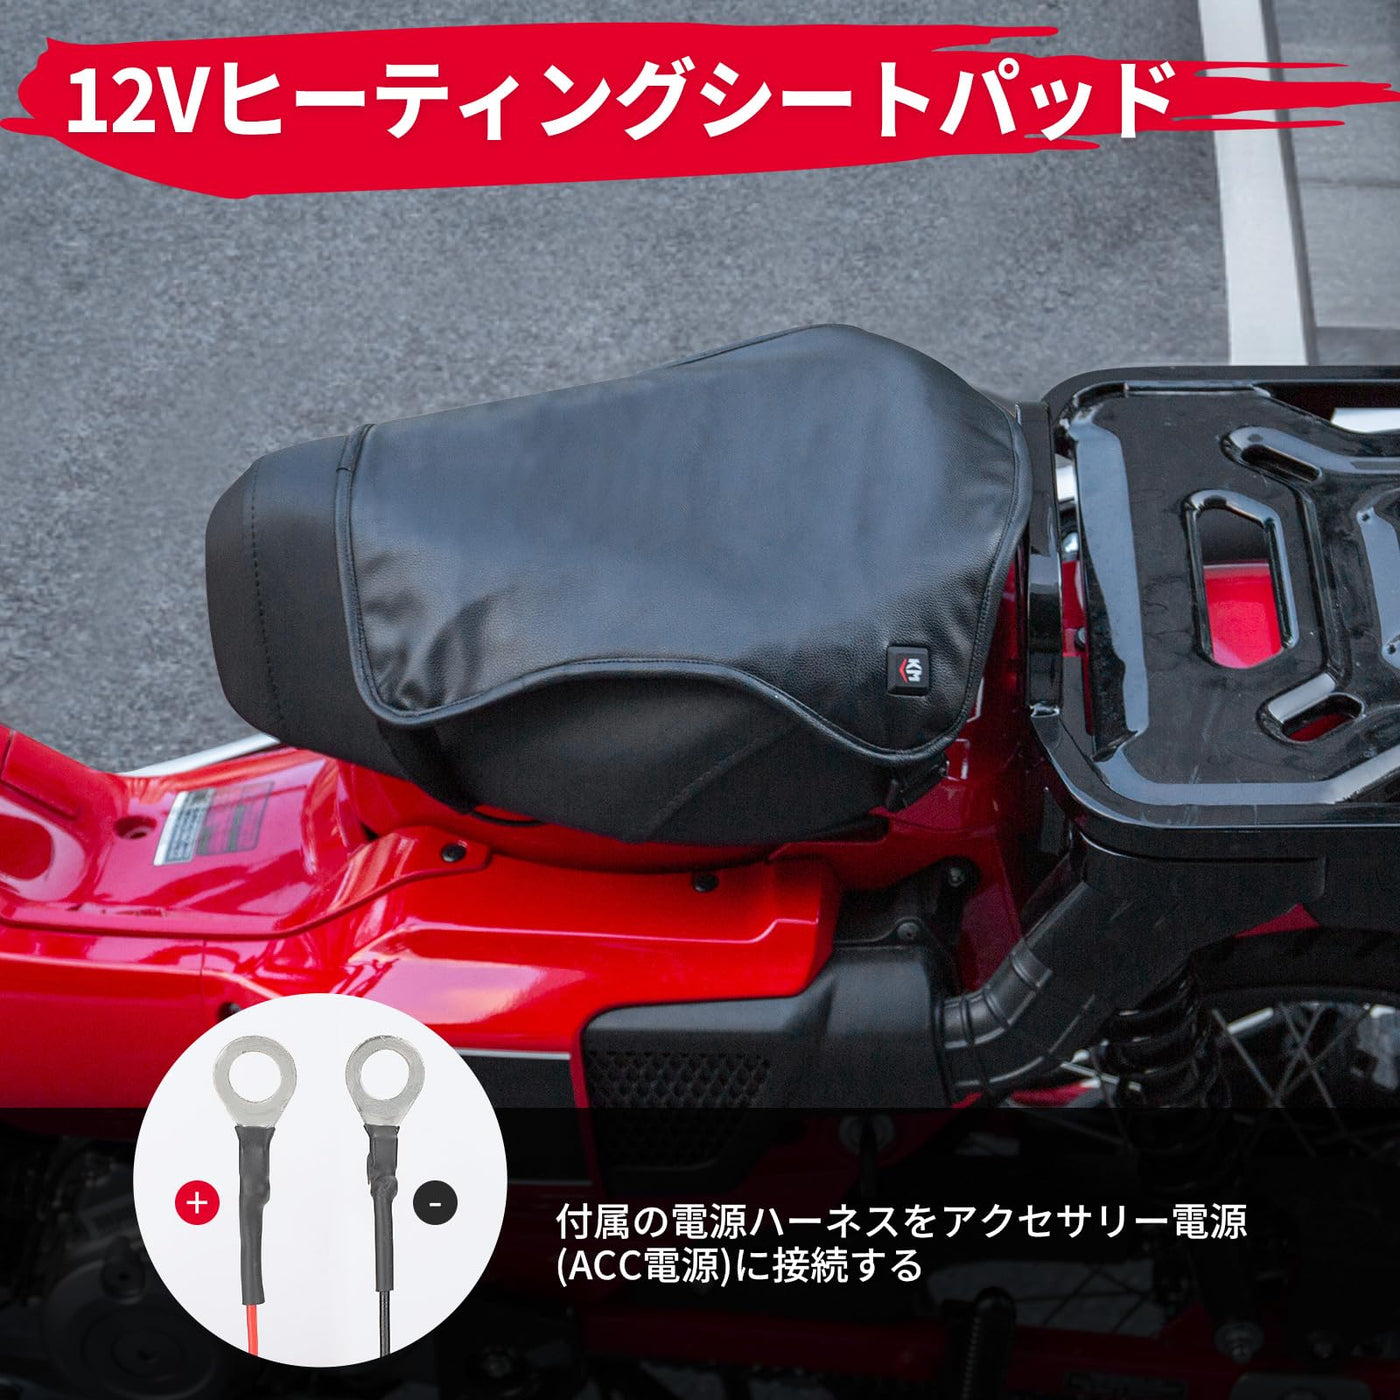 バイク用シートヒーター 電熱クッション 即暖 防水 PU素材 寒さ対策